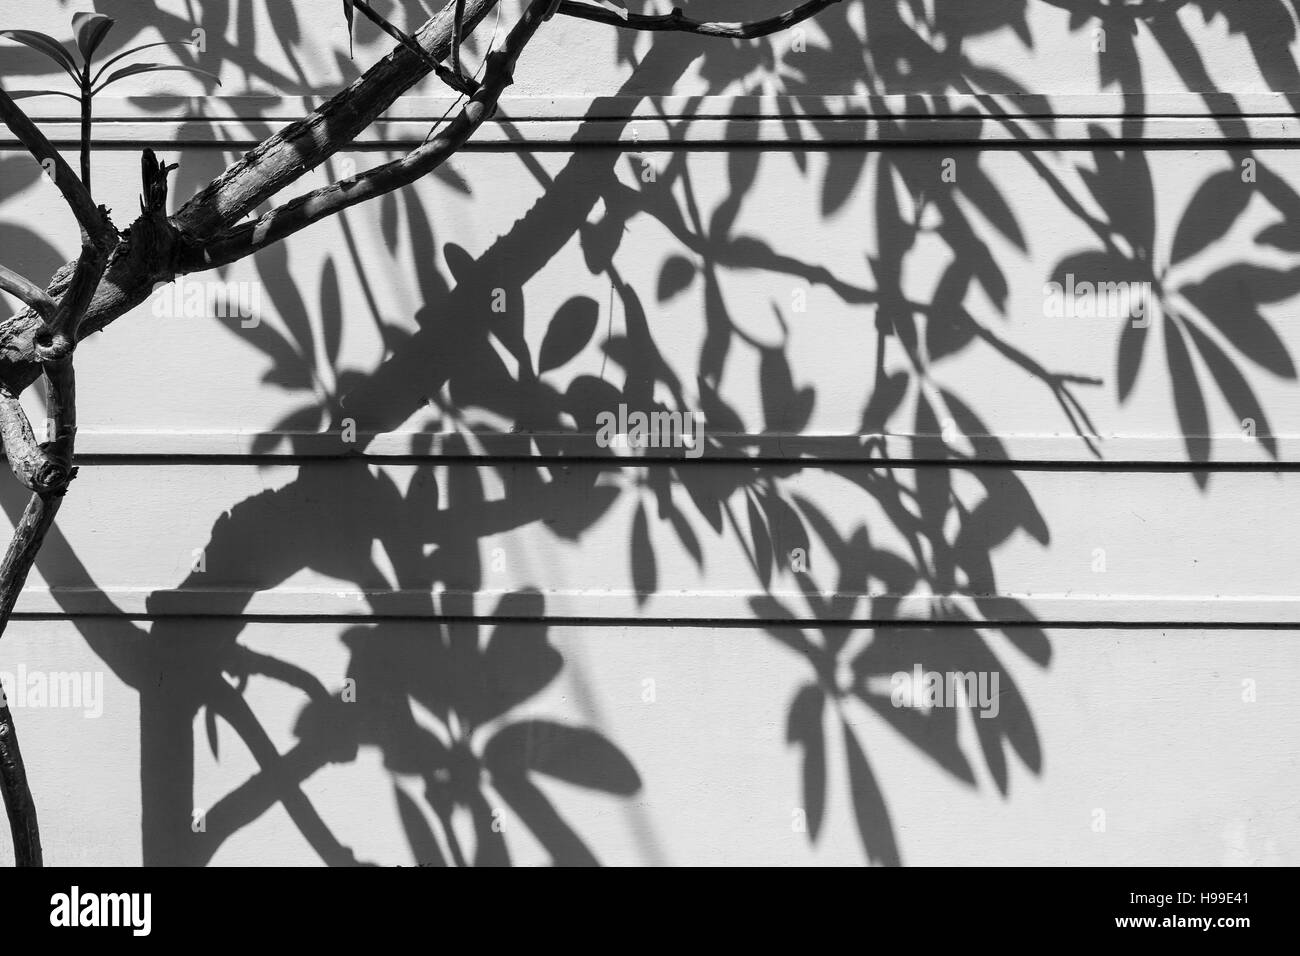 Am Nachmittag Schatten der Zweige und Blätter eines Baumes auf eine Weile wall in Hyderabad, Indien Stockfoto